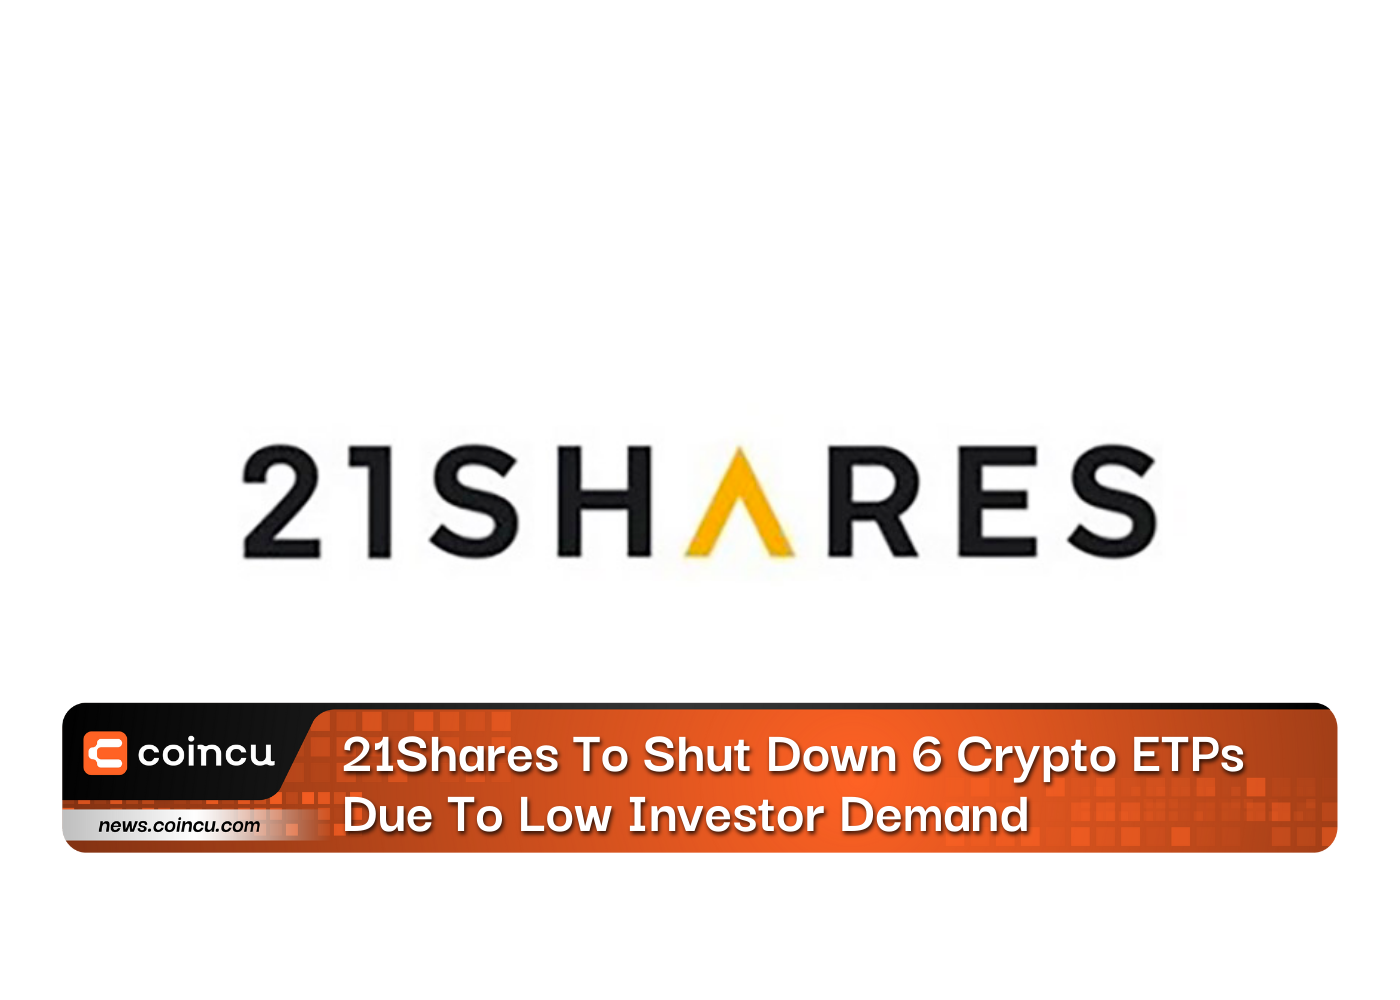 21Shares, 낮은 투자자 수요로 인해 6개의 암호화 ETP 종료